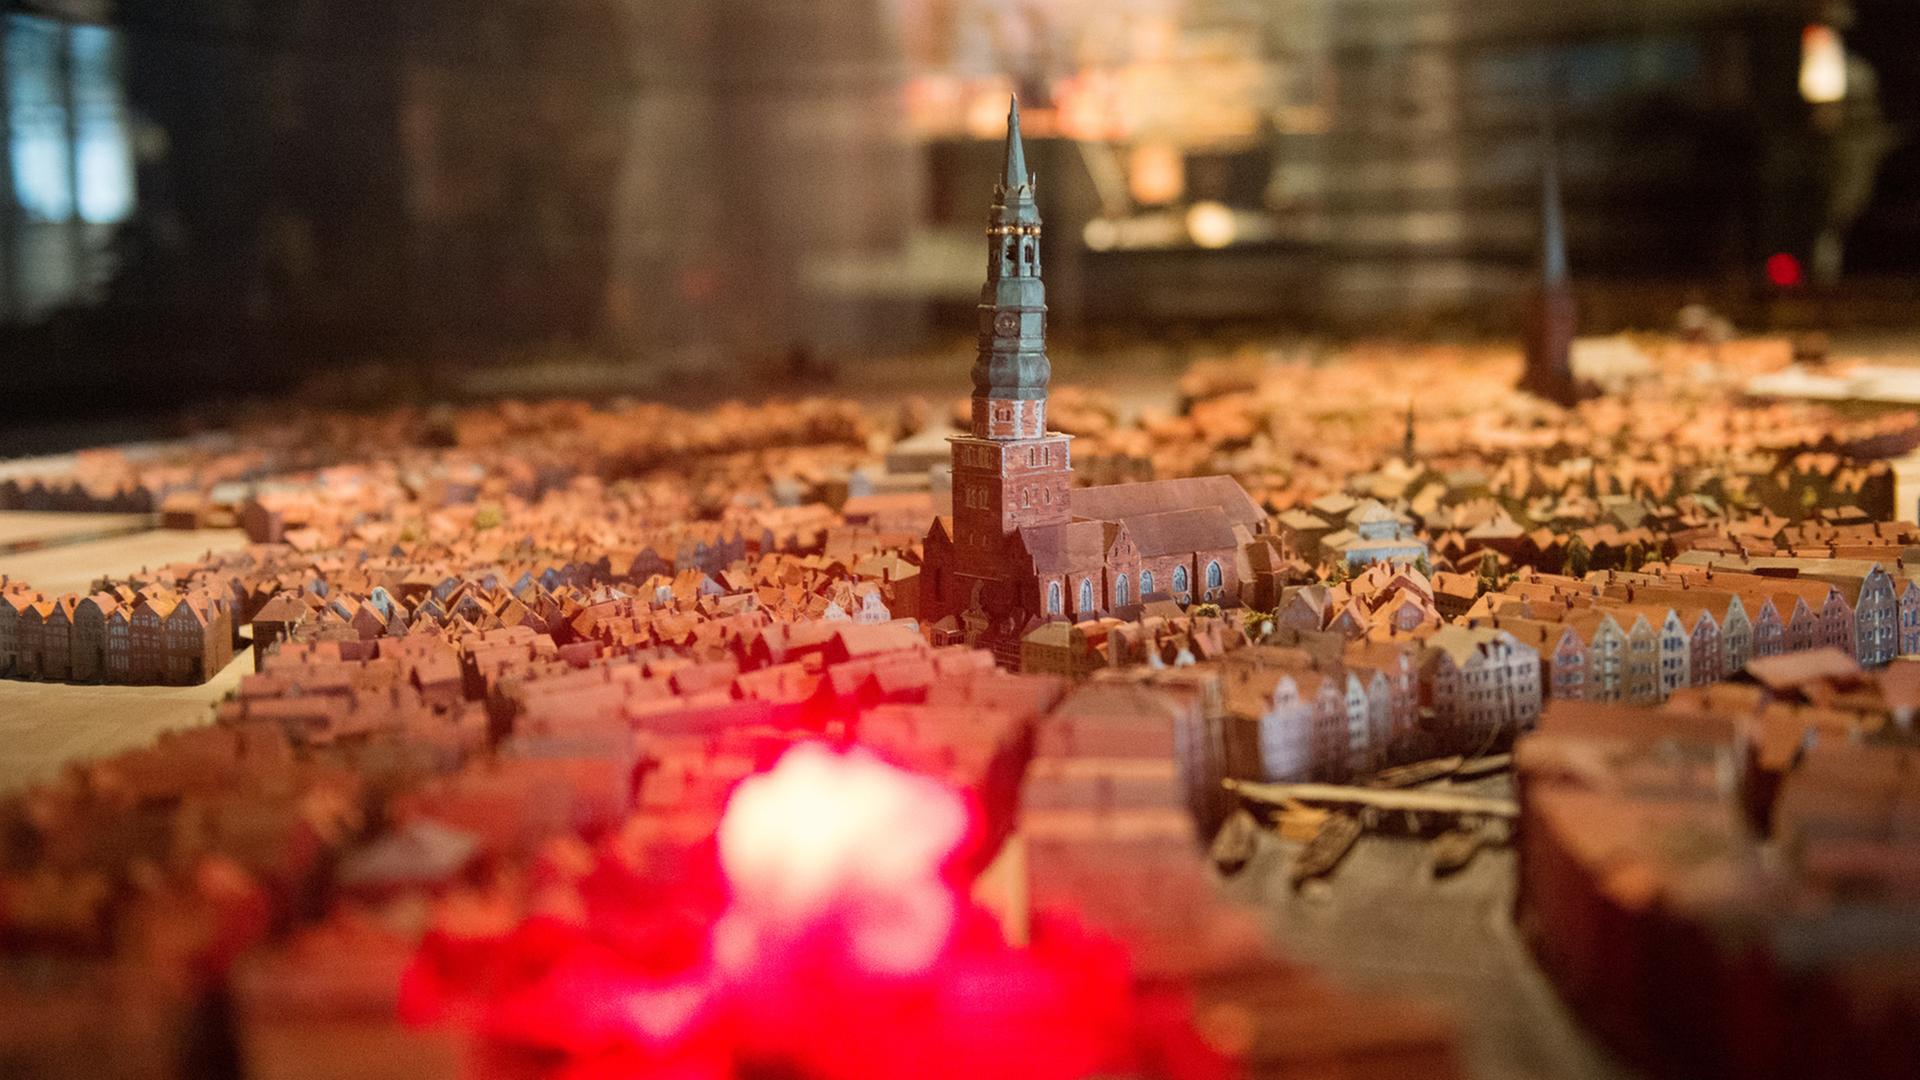 Ein zeitgenössisches Model zeigt die beim großen Hamburger Brand von 1842 zerstörten Gebäude, mittig die St. Nikolaikirche, im Vordergrund den leuchtenden Ausgangsort des Feuers, aufgenommen am 18.04.2017 im Museum für Hamburgische Geschichte in Hamburg